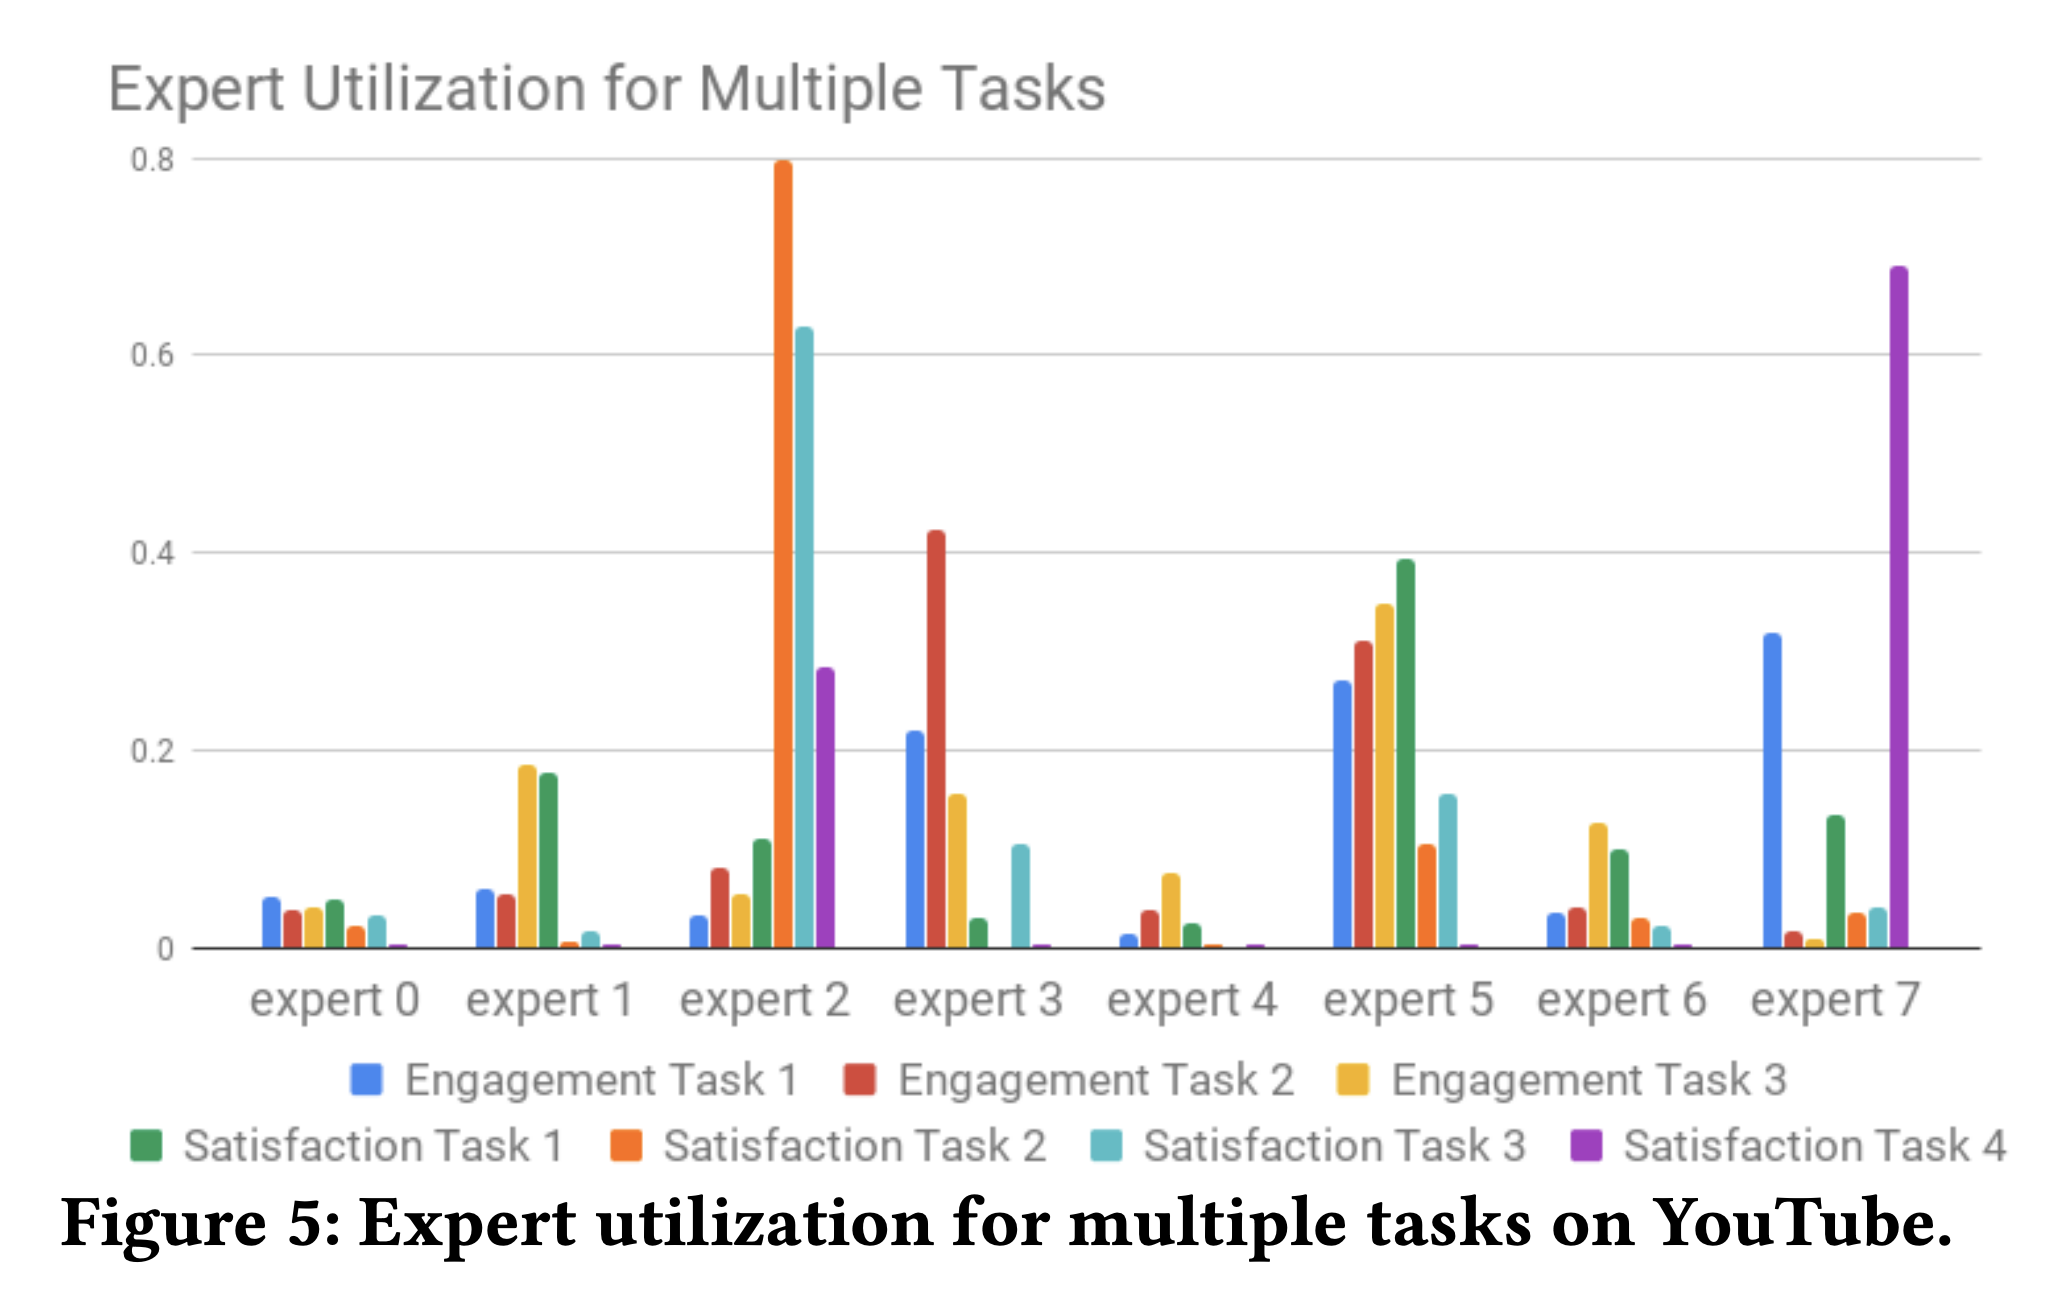 Figure 5: Expert utilization for multiple tasks on YouTube.